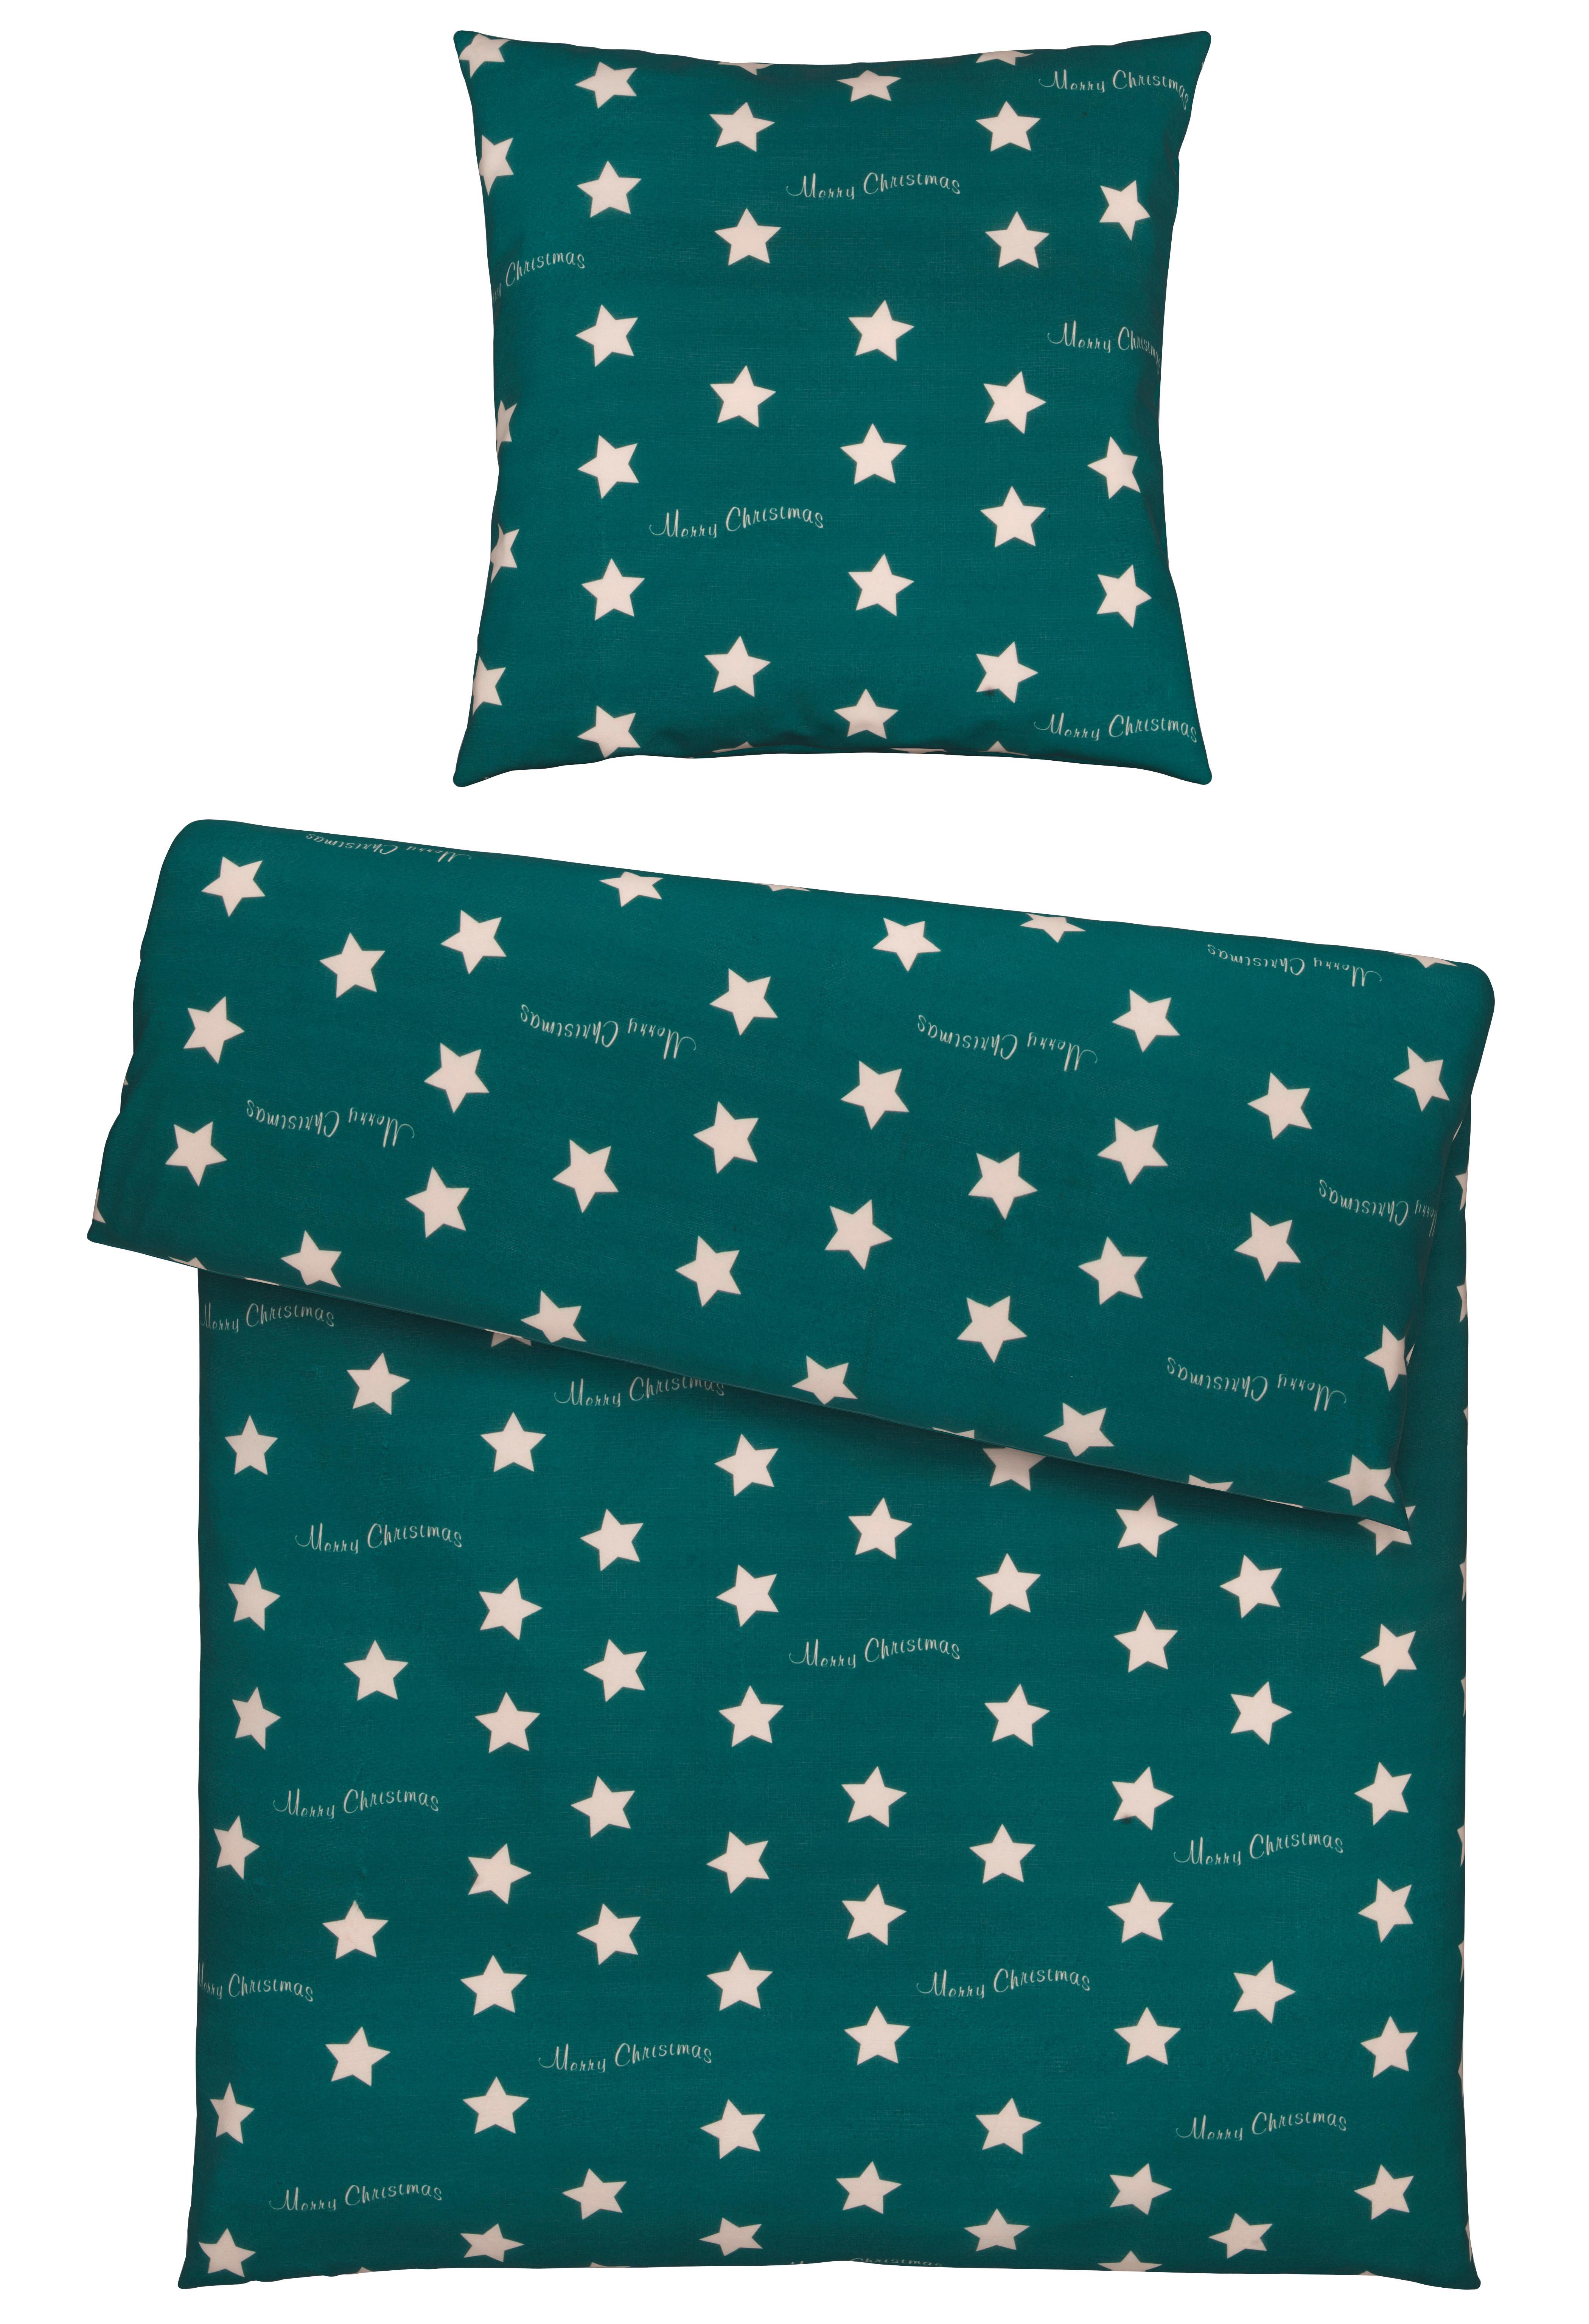 Bettwäsche Stars in Grün ca. 135x200cm - Grün, KONVENTIONELL, Textil (135/200cm) - Modern Living